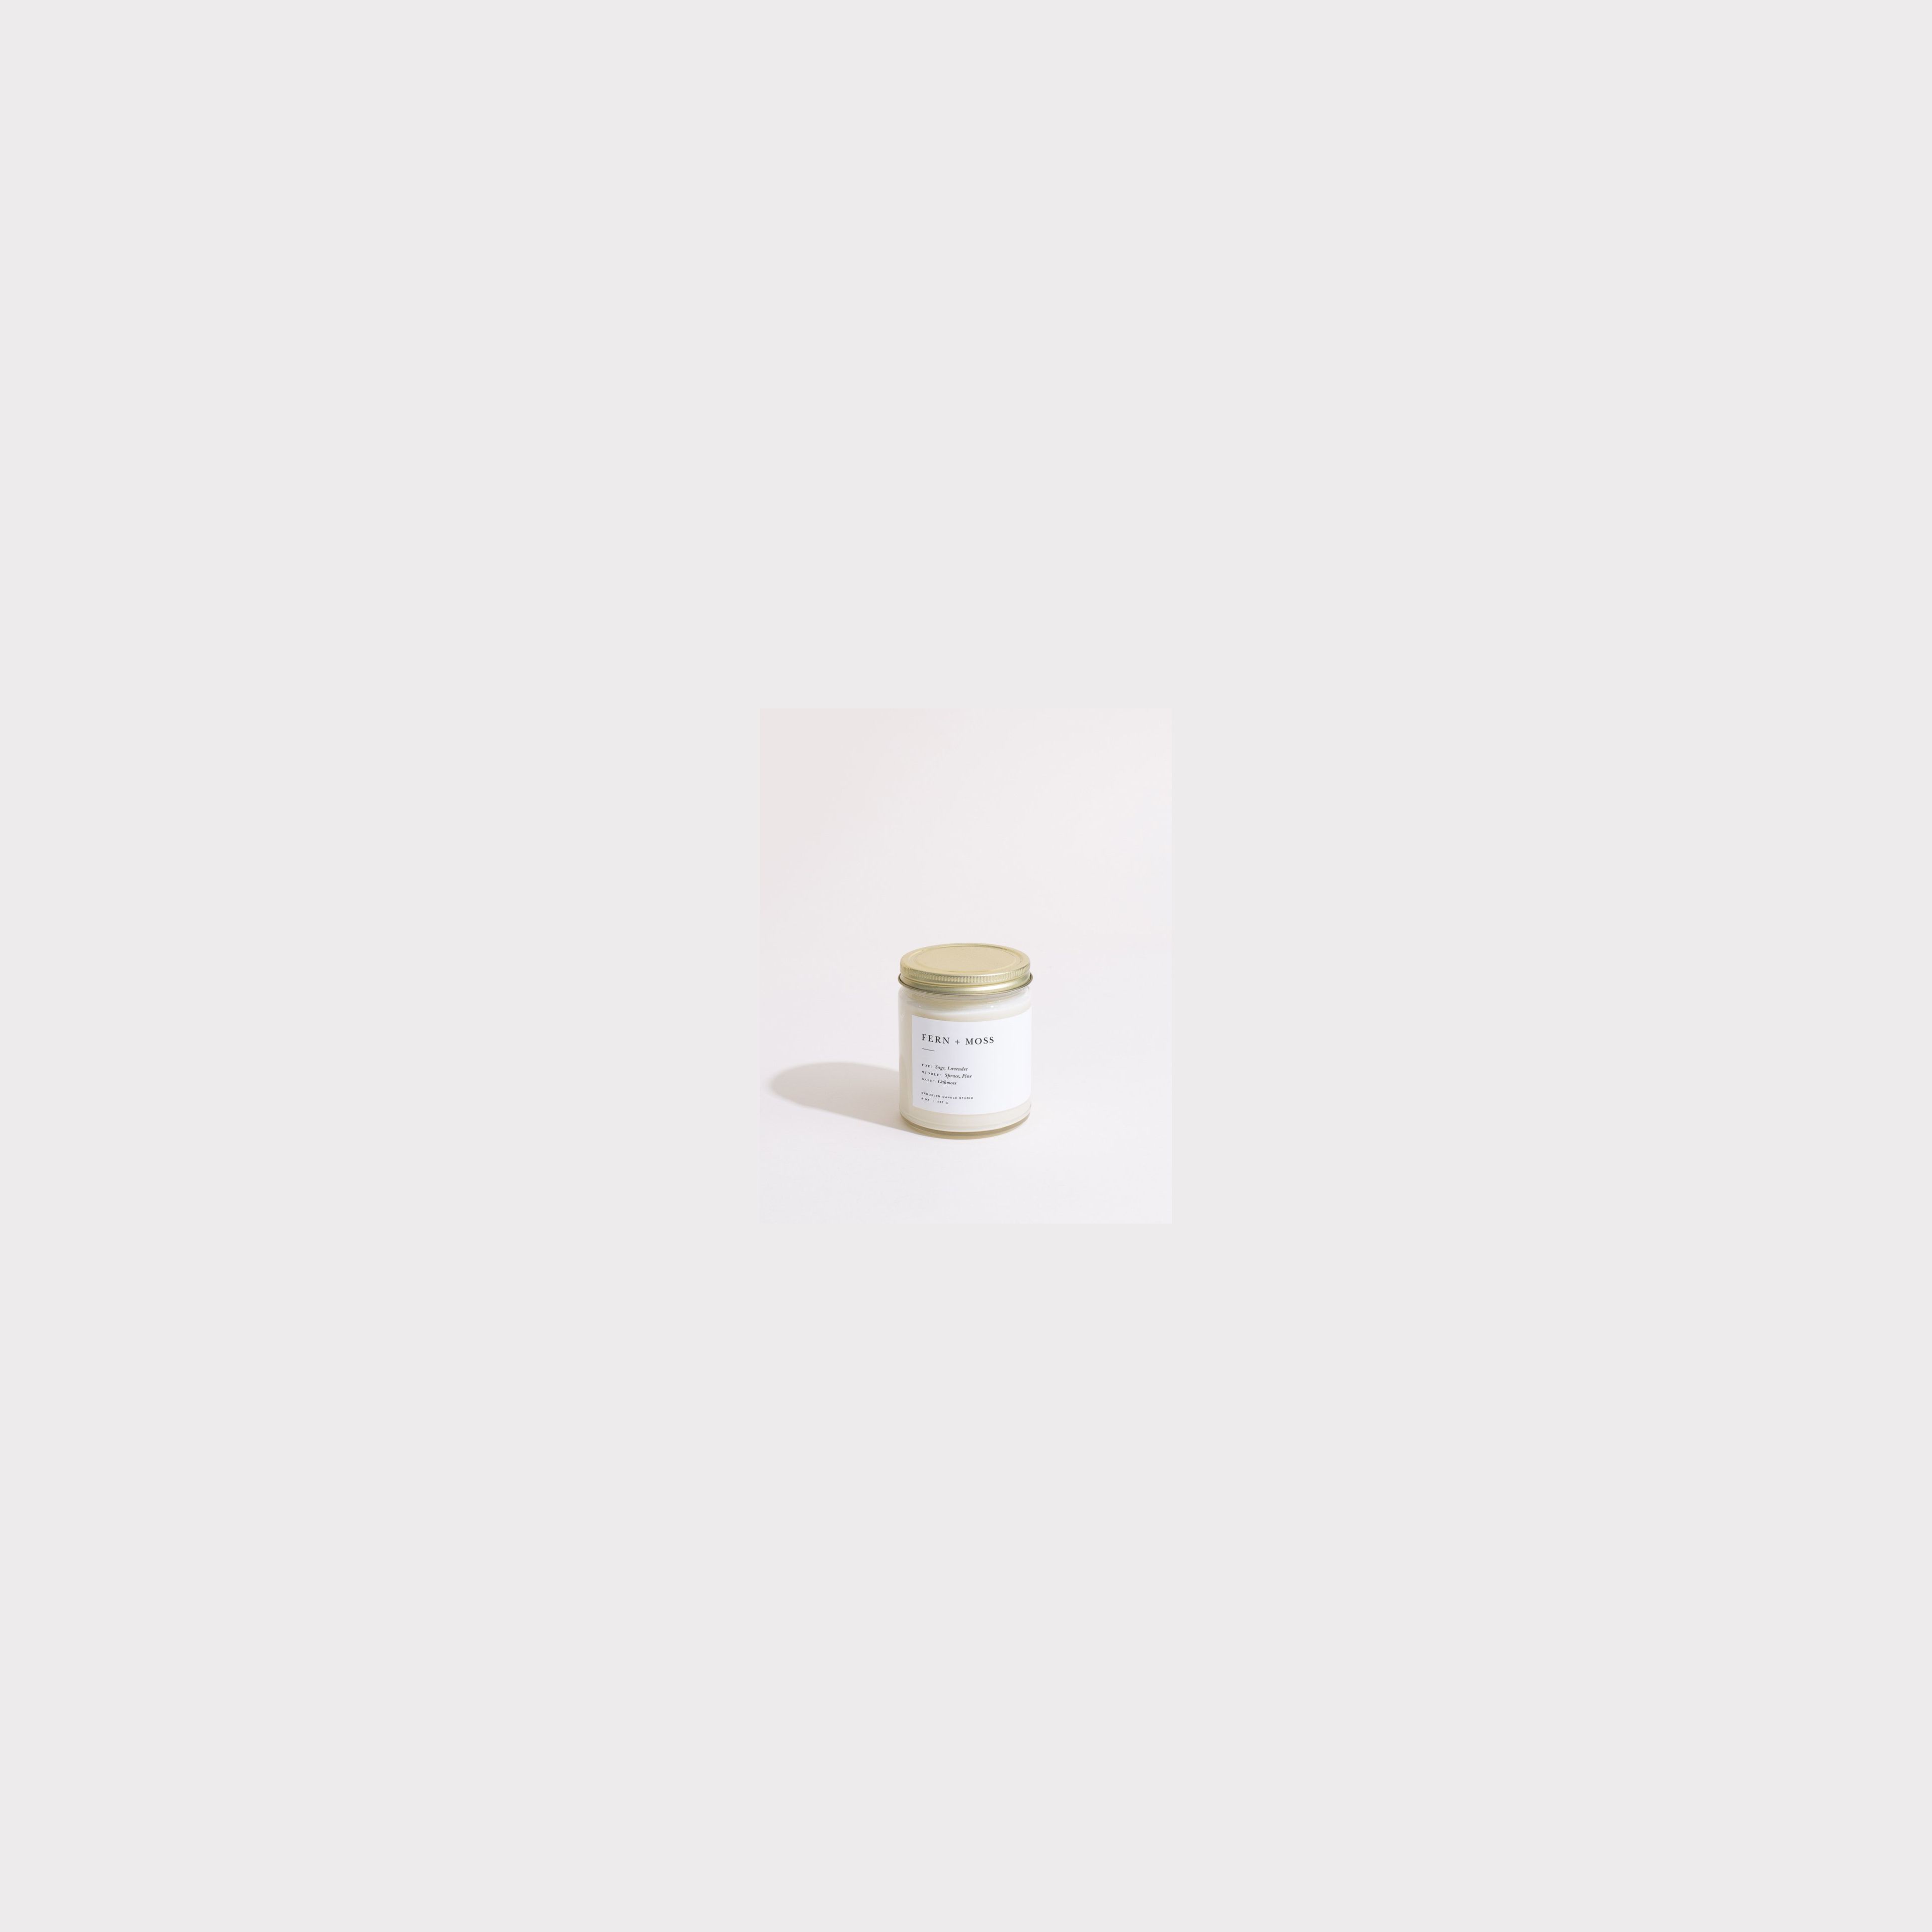 Fern + Moss Minimalist Candle